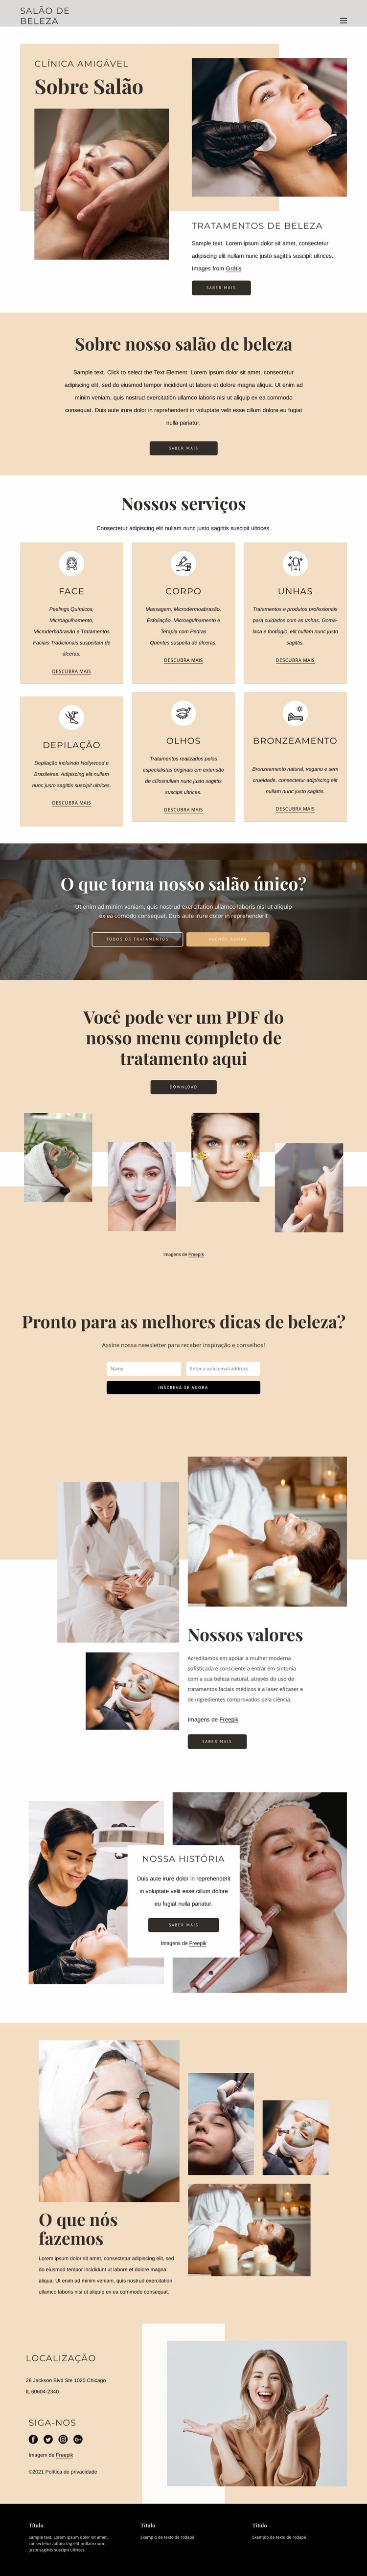 Tratamentos de beleza e estética Design do site